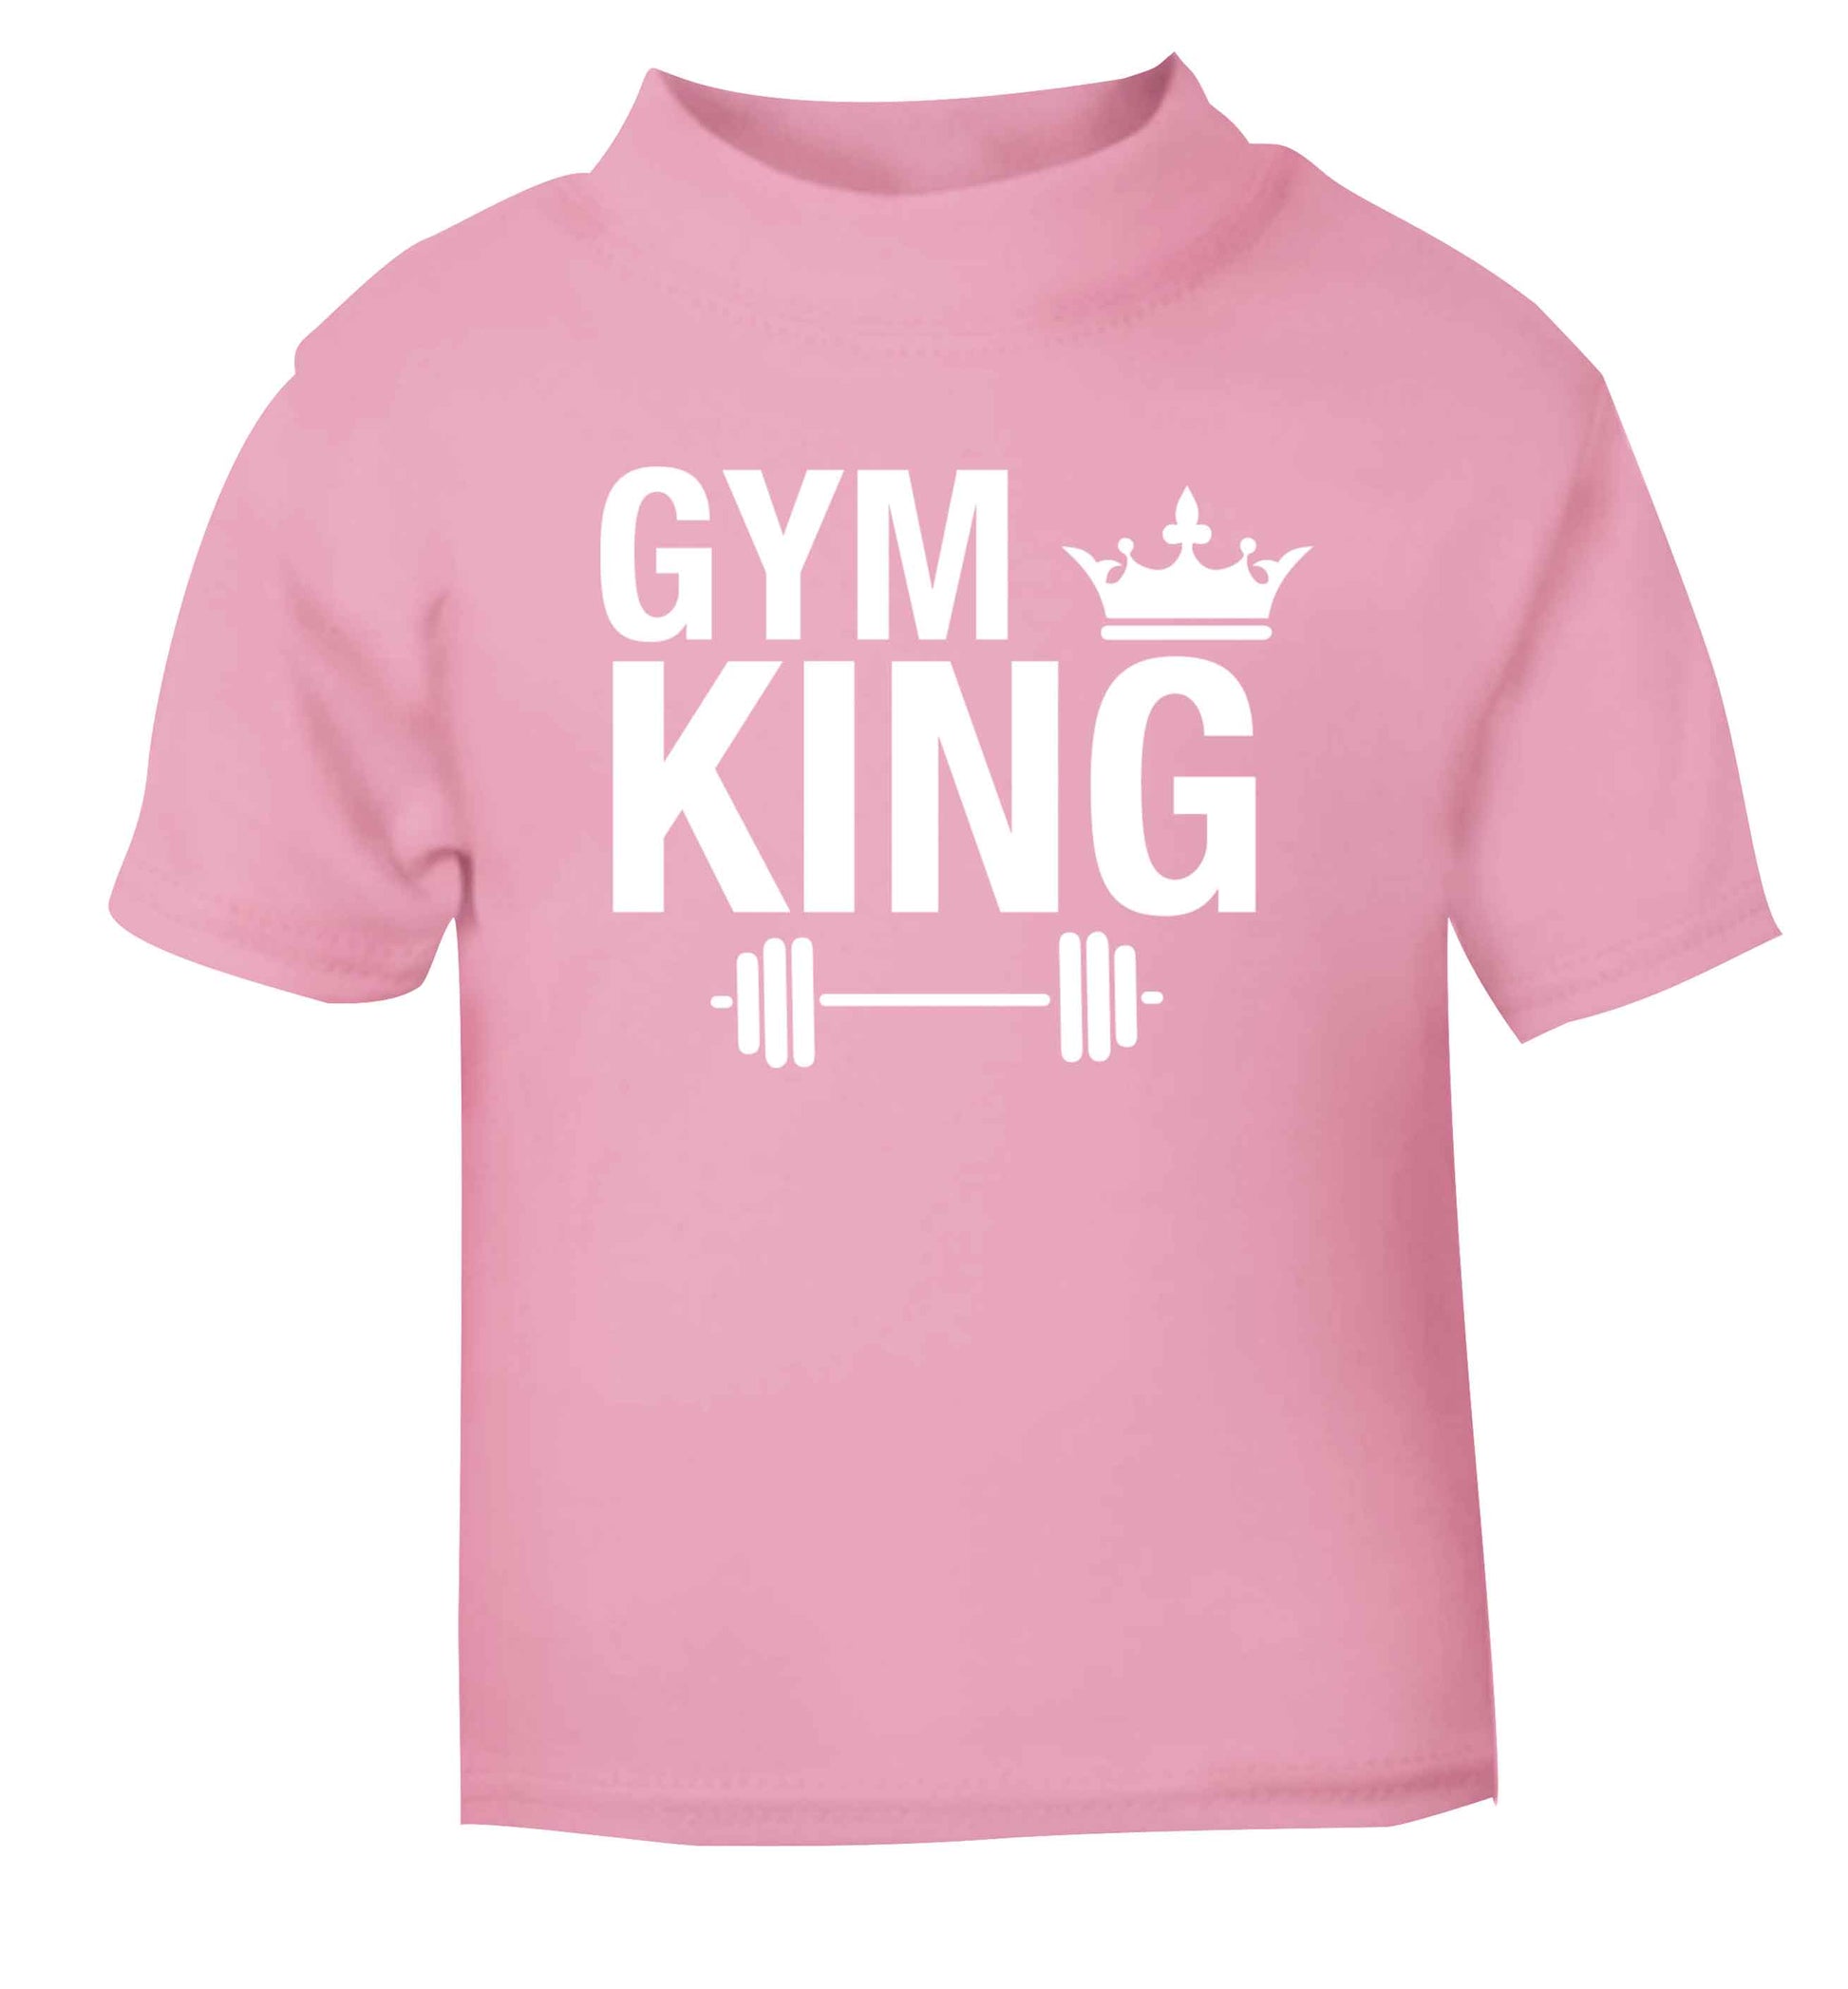 Gym king light pink Baby Toddler Tshirt 2 Years